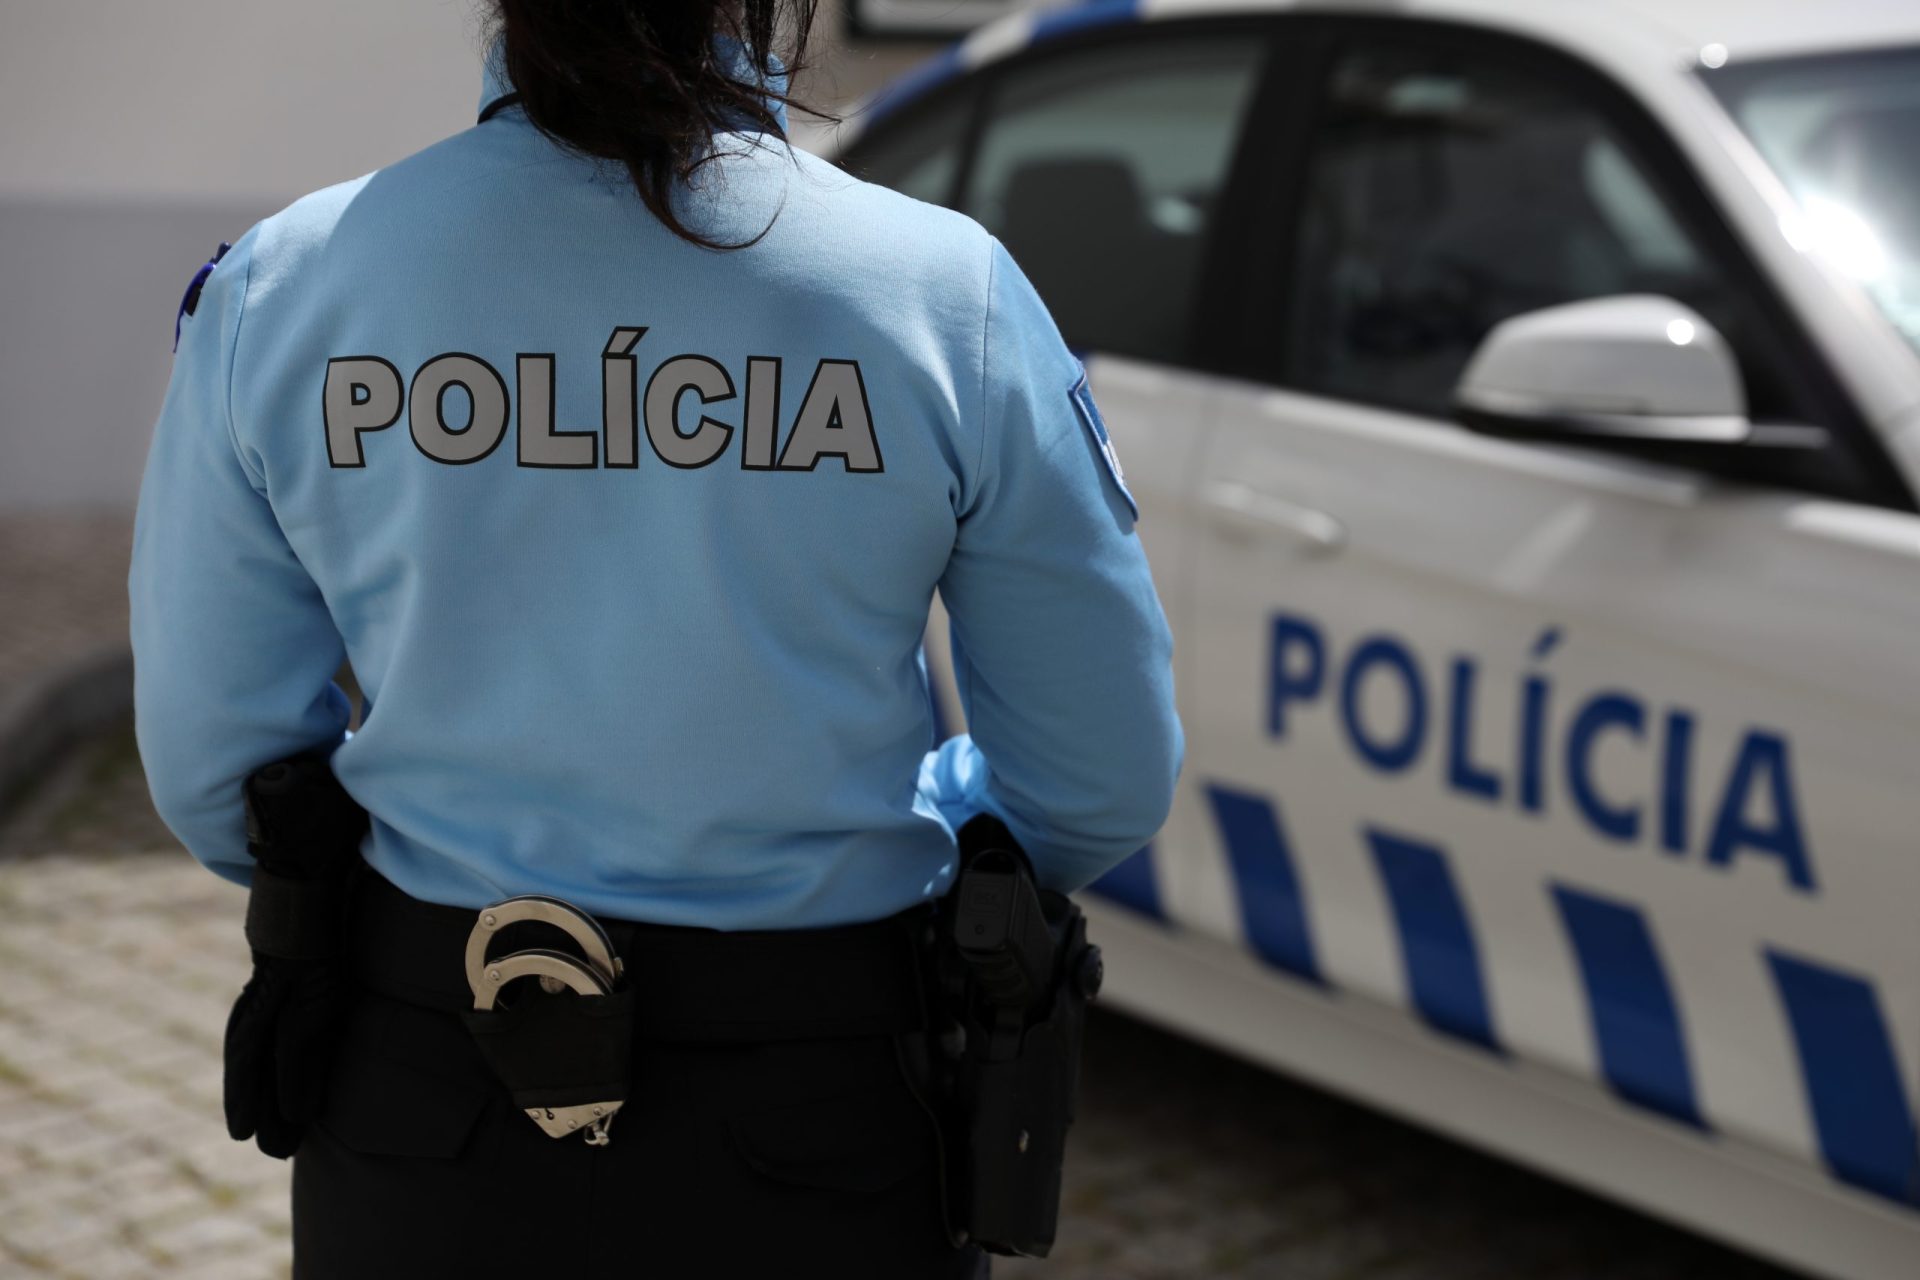 PSP perseguiu durante 25 quilómetros suspeito de tráfico de droga em fuga em Viana do Castelo